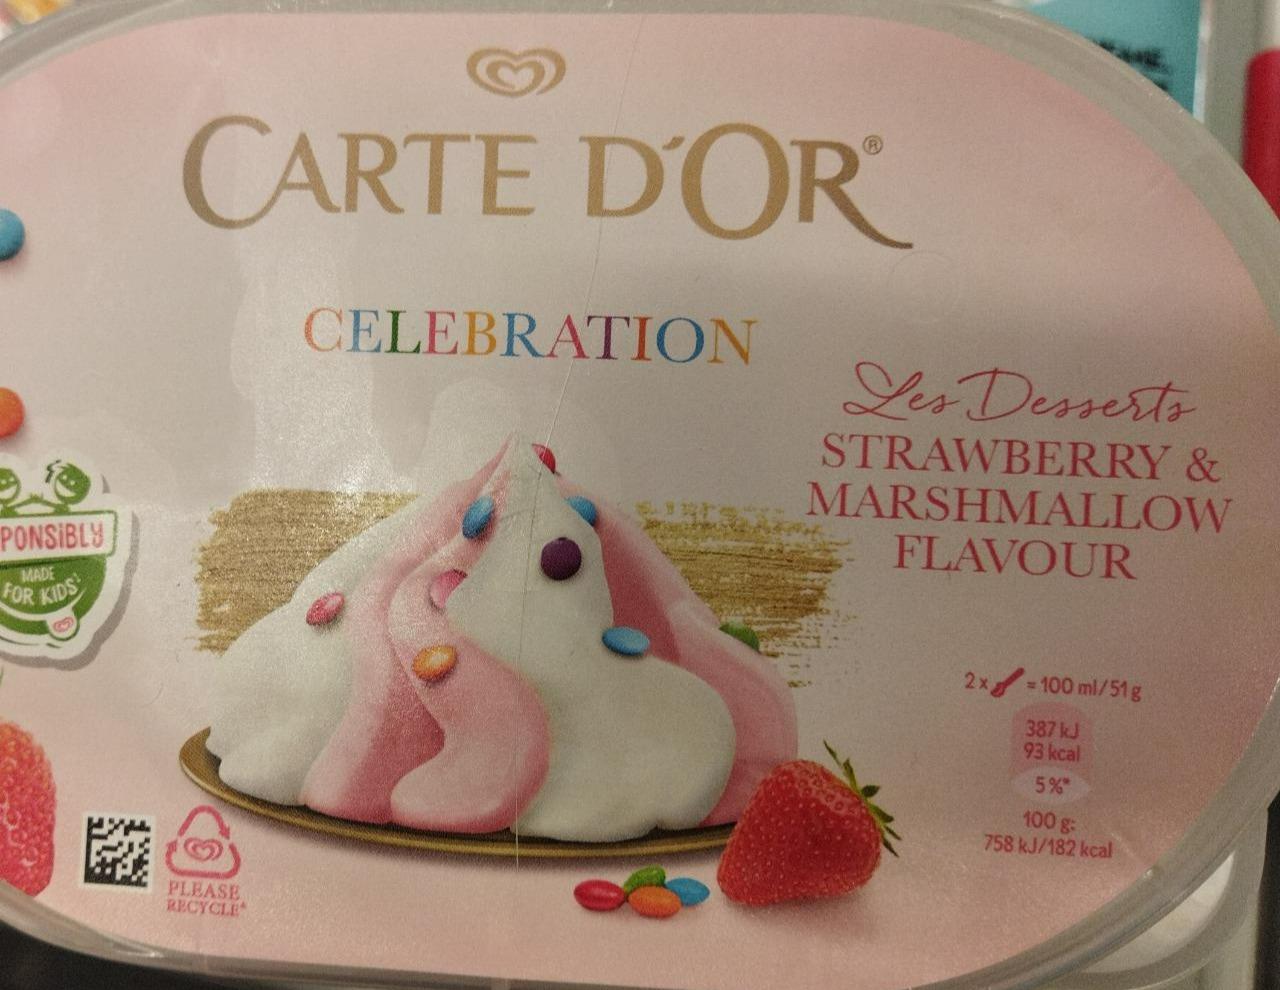 Fotografie - Celebration Les Desserts Strawberry & Marshmallow flavour Carte d'Or